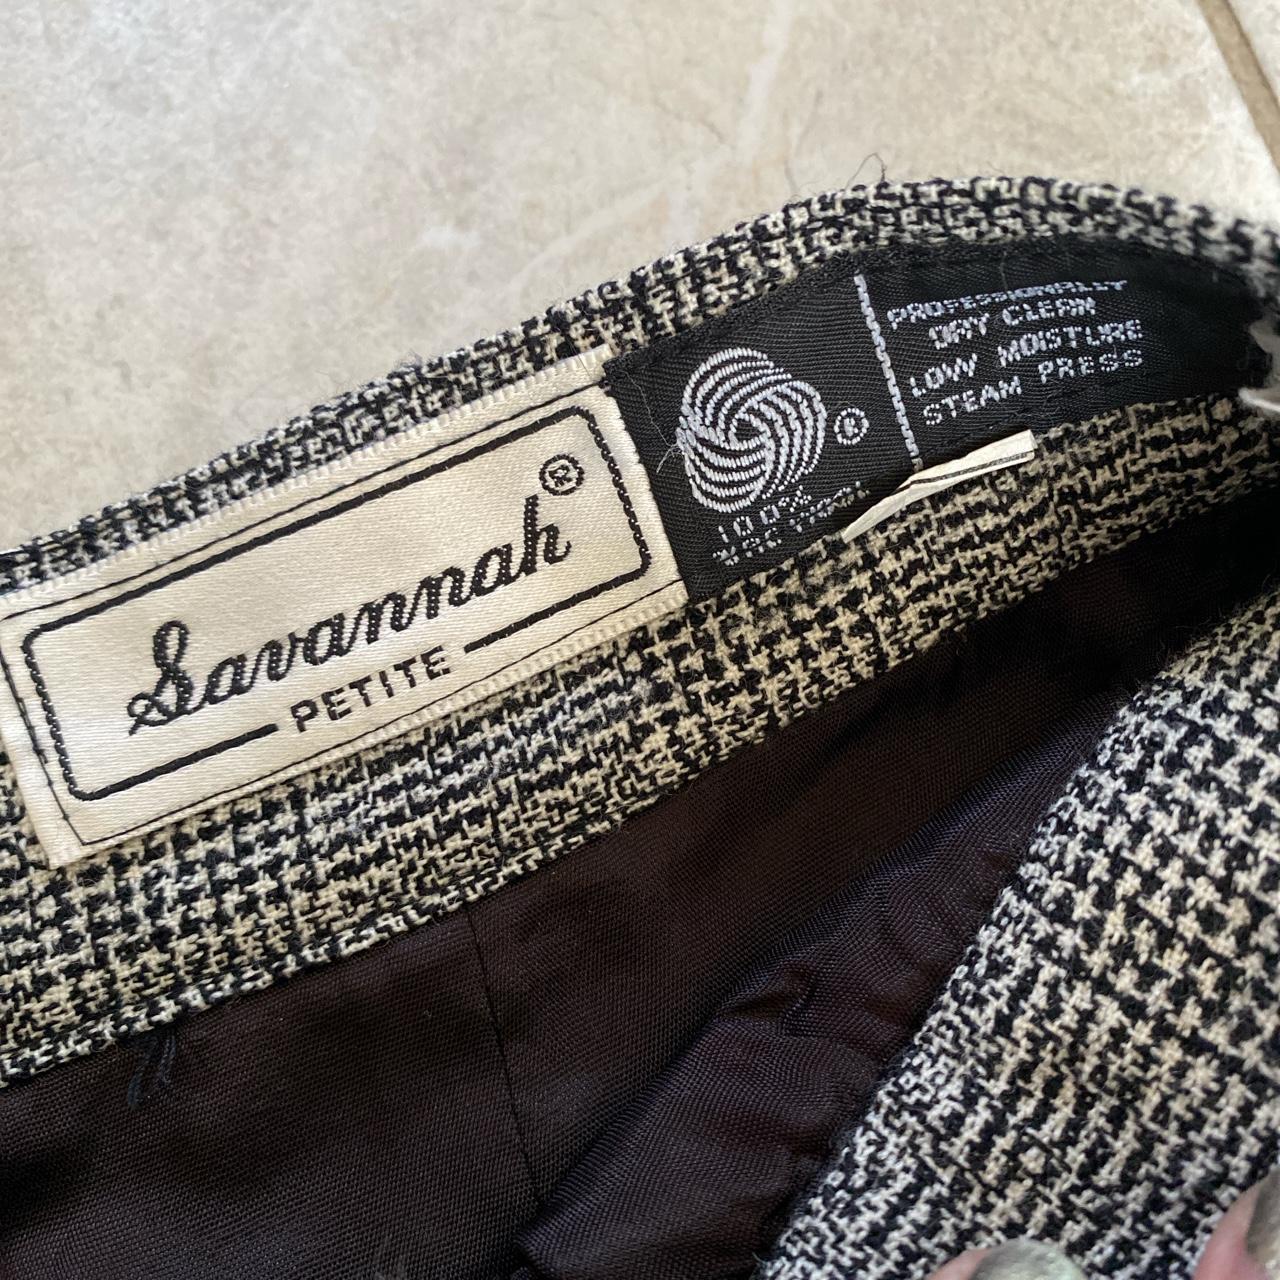 Savannah Petite 80’s vintage 100% pure wool black... - Depop